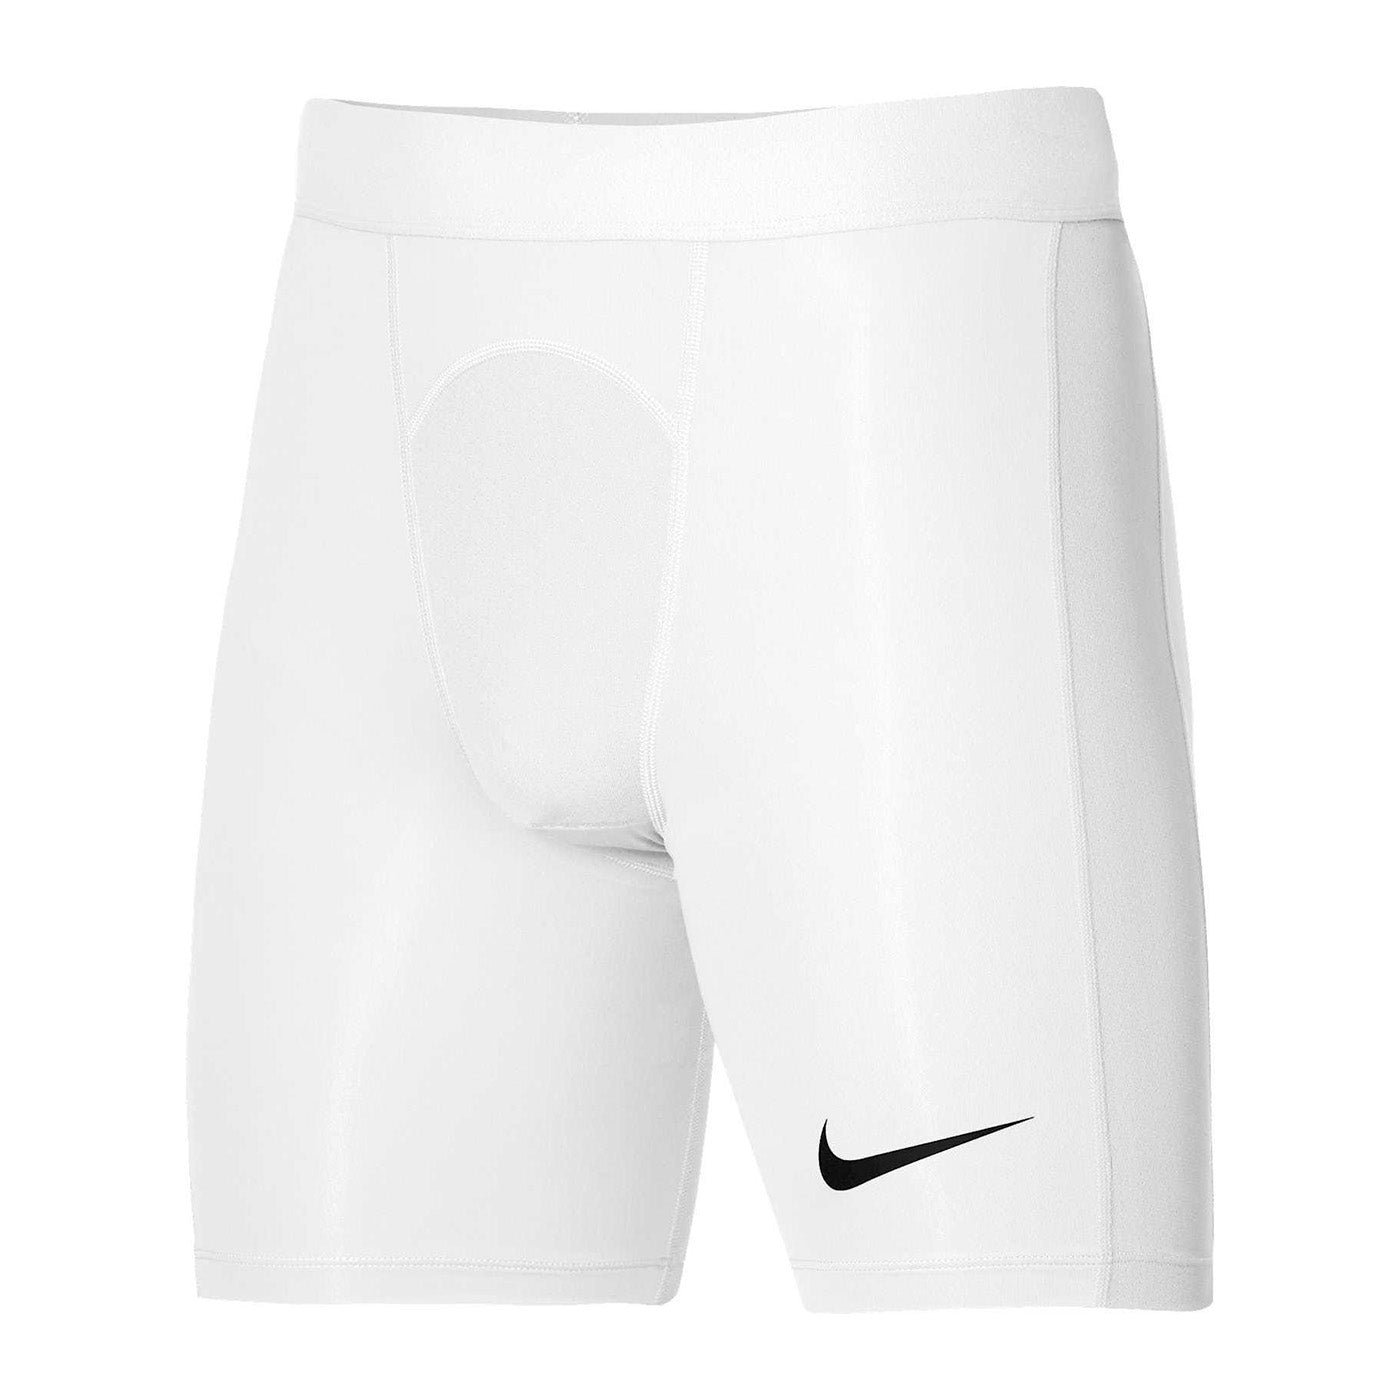 Strike Dri-FIT shorts, white